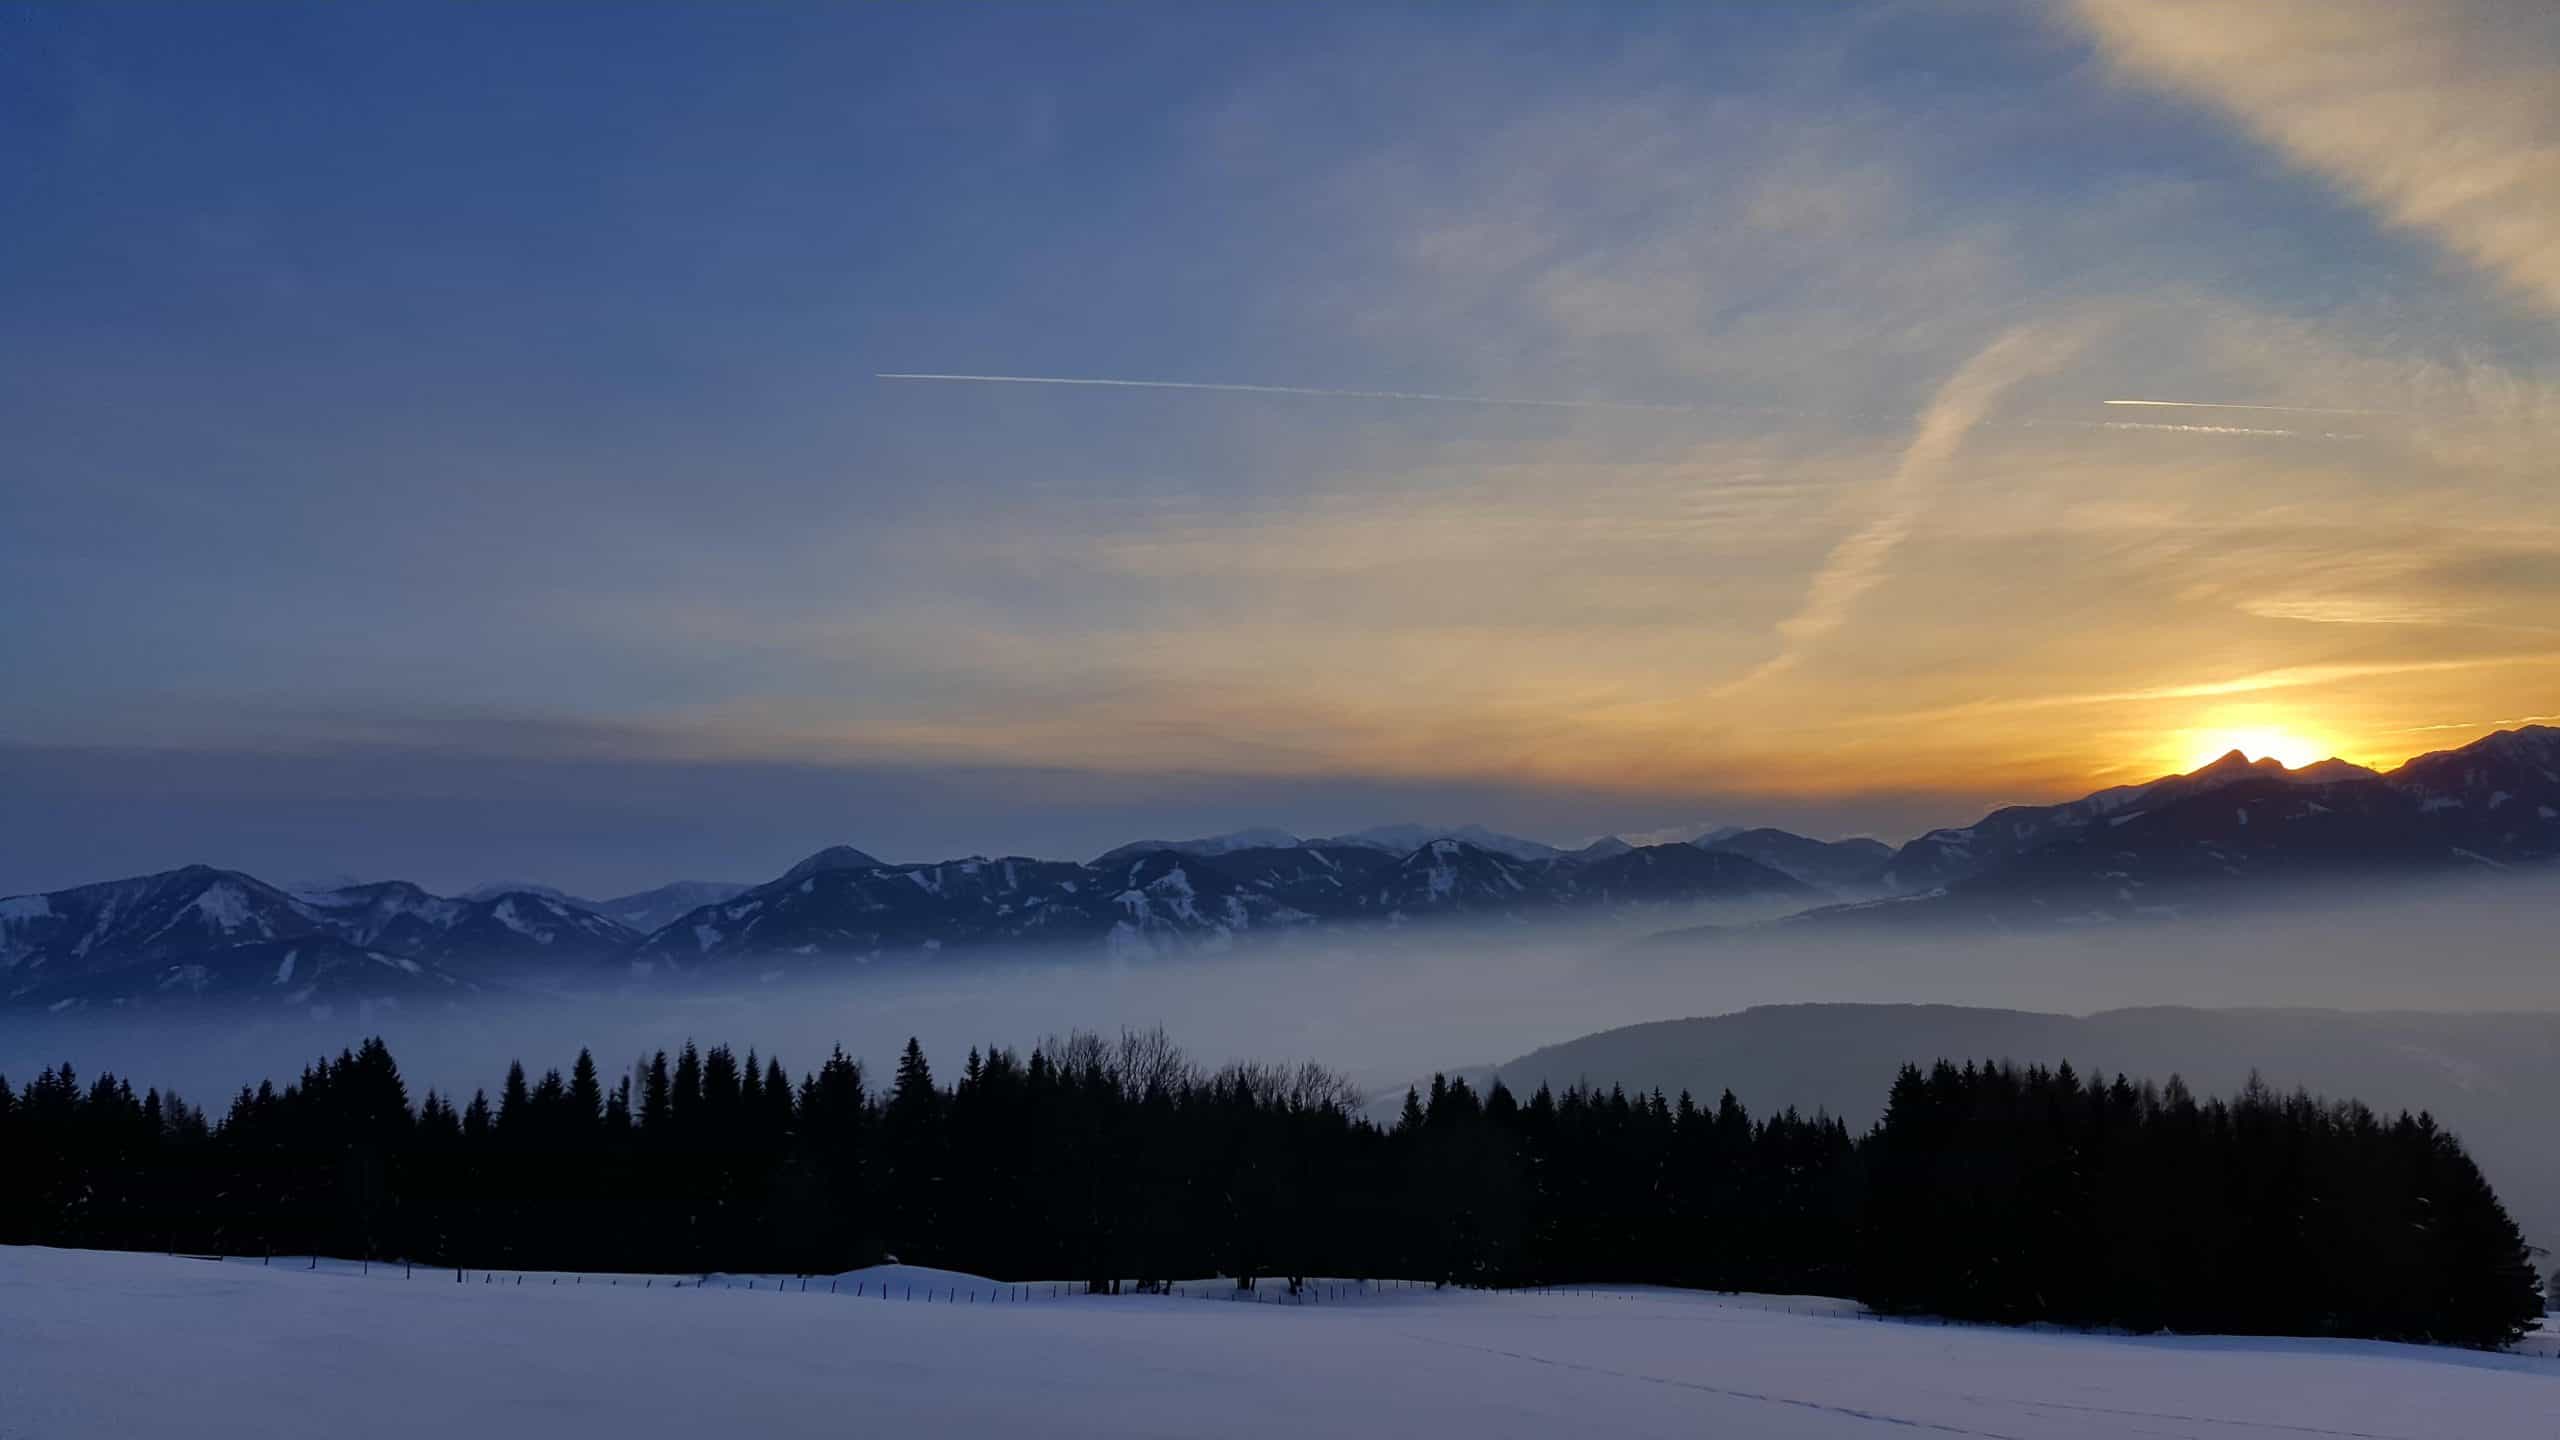 Winterlandschaft mit Sonnenuntergang in der Urlaubsregion Millstätter See in Kärnten - Winterwandern, Schneeschuhwandern